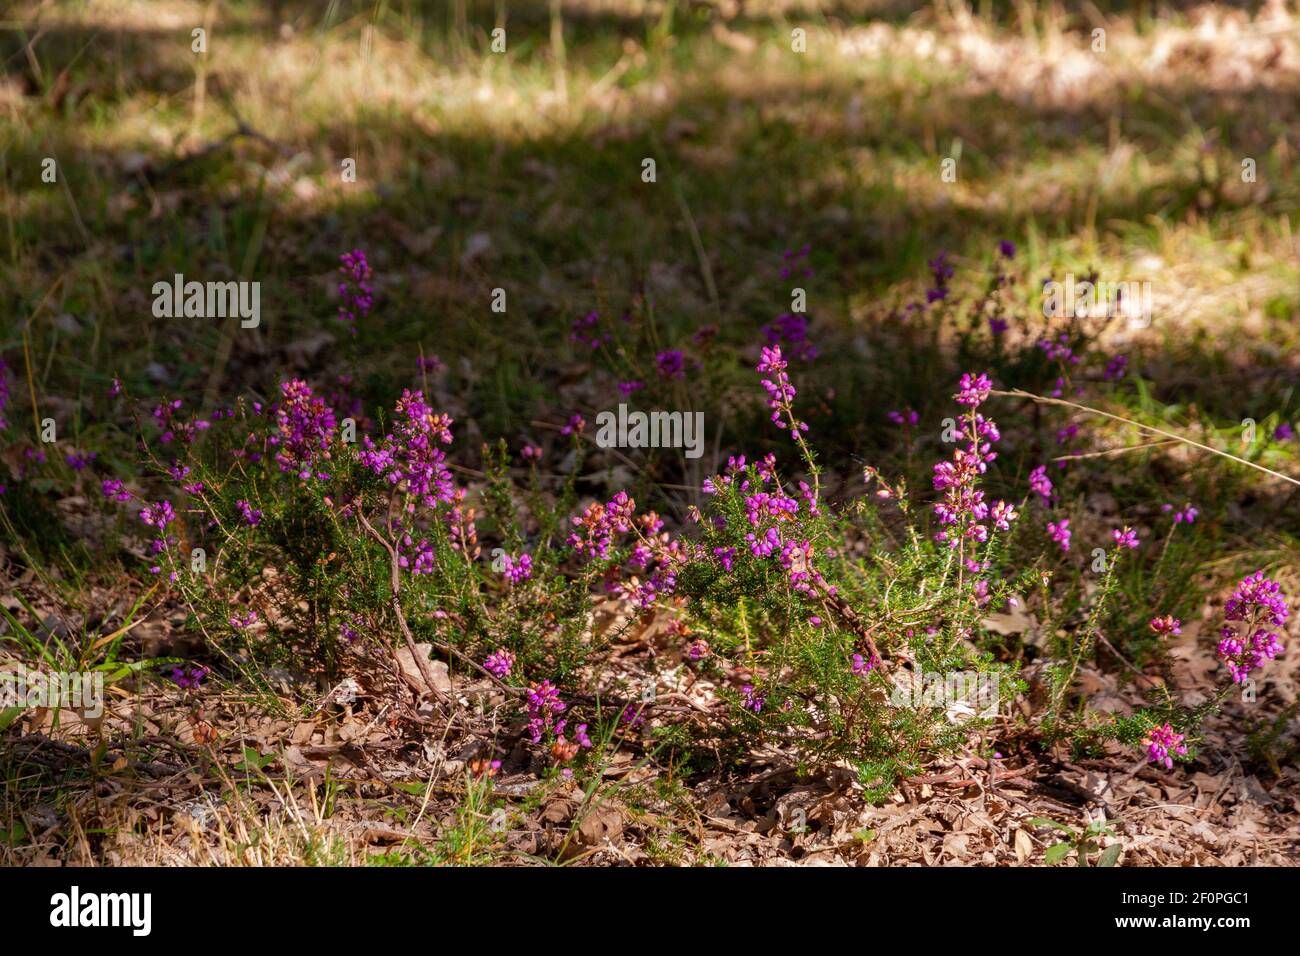 Detalle de un poco de púrpura en la hierba Foto de stock